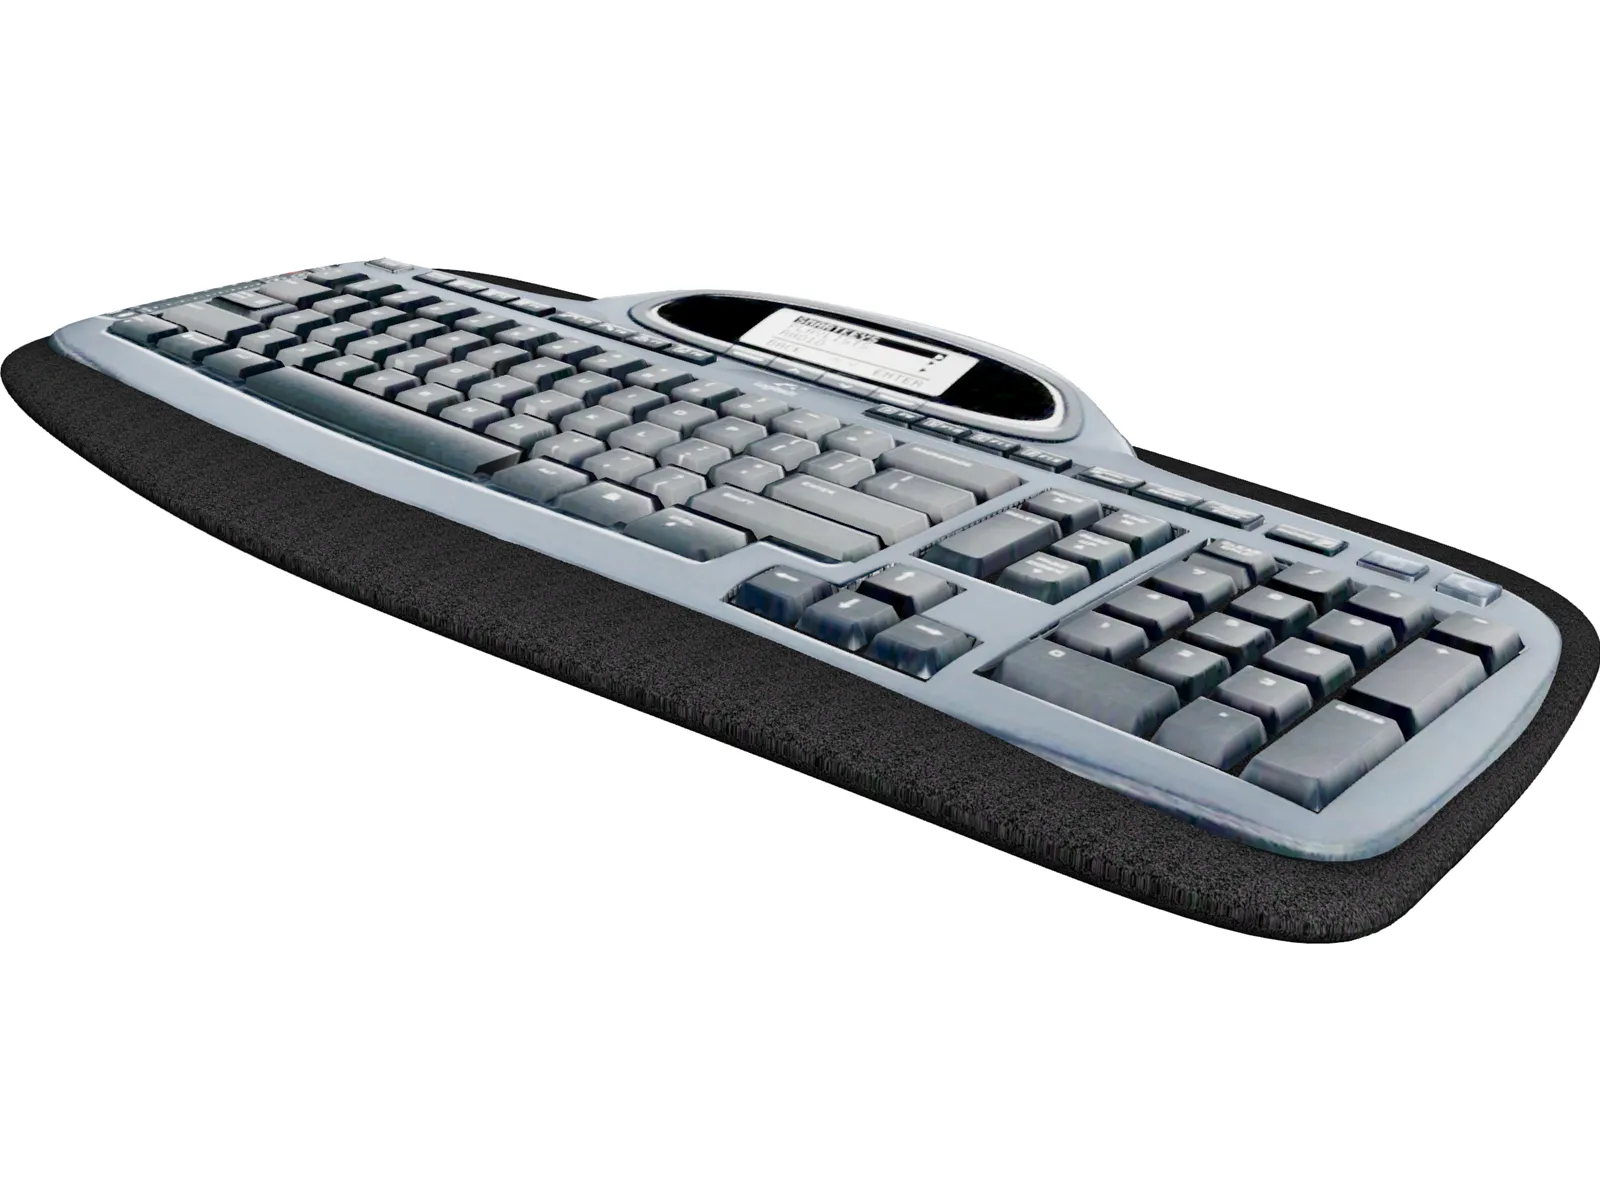 Logitech MX5000 Keyboard 3D Model